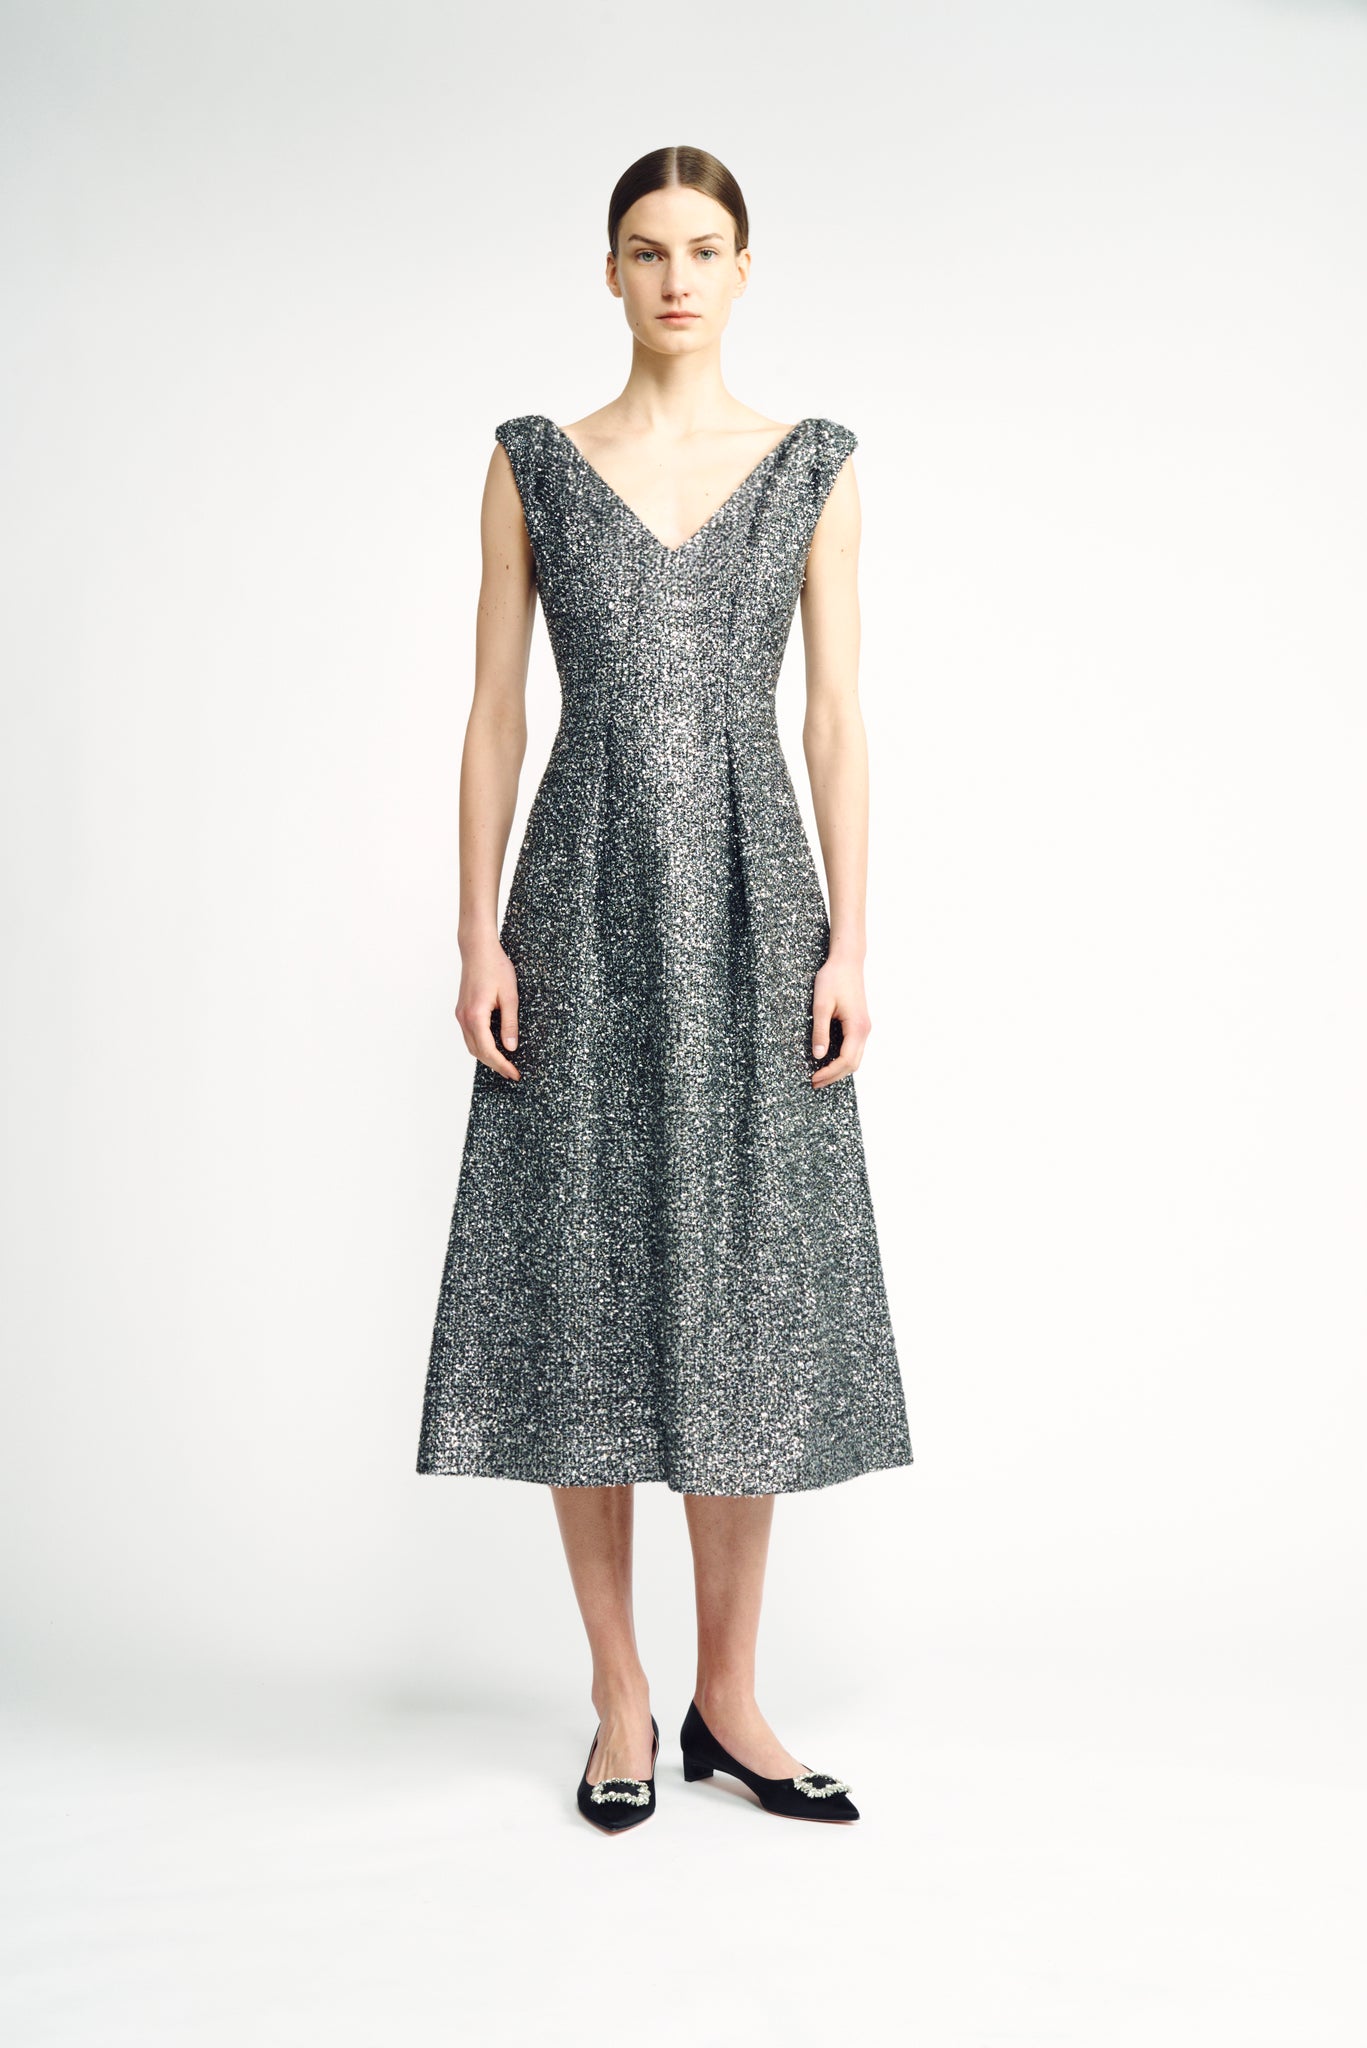 Tweed-Effect Jacquard Dress - Women - Ready-to-Wear